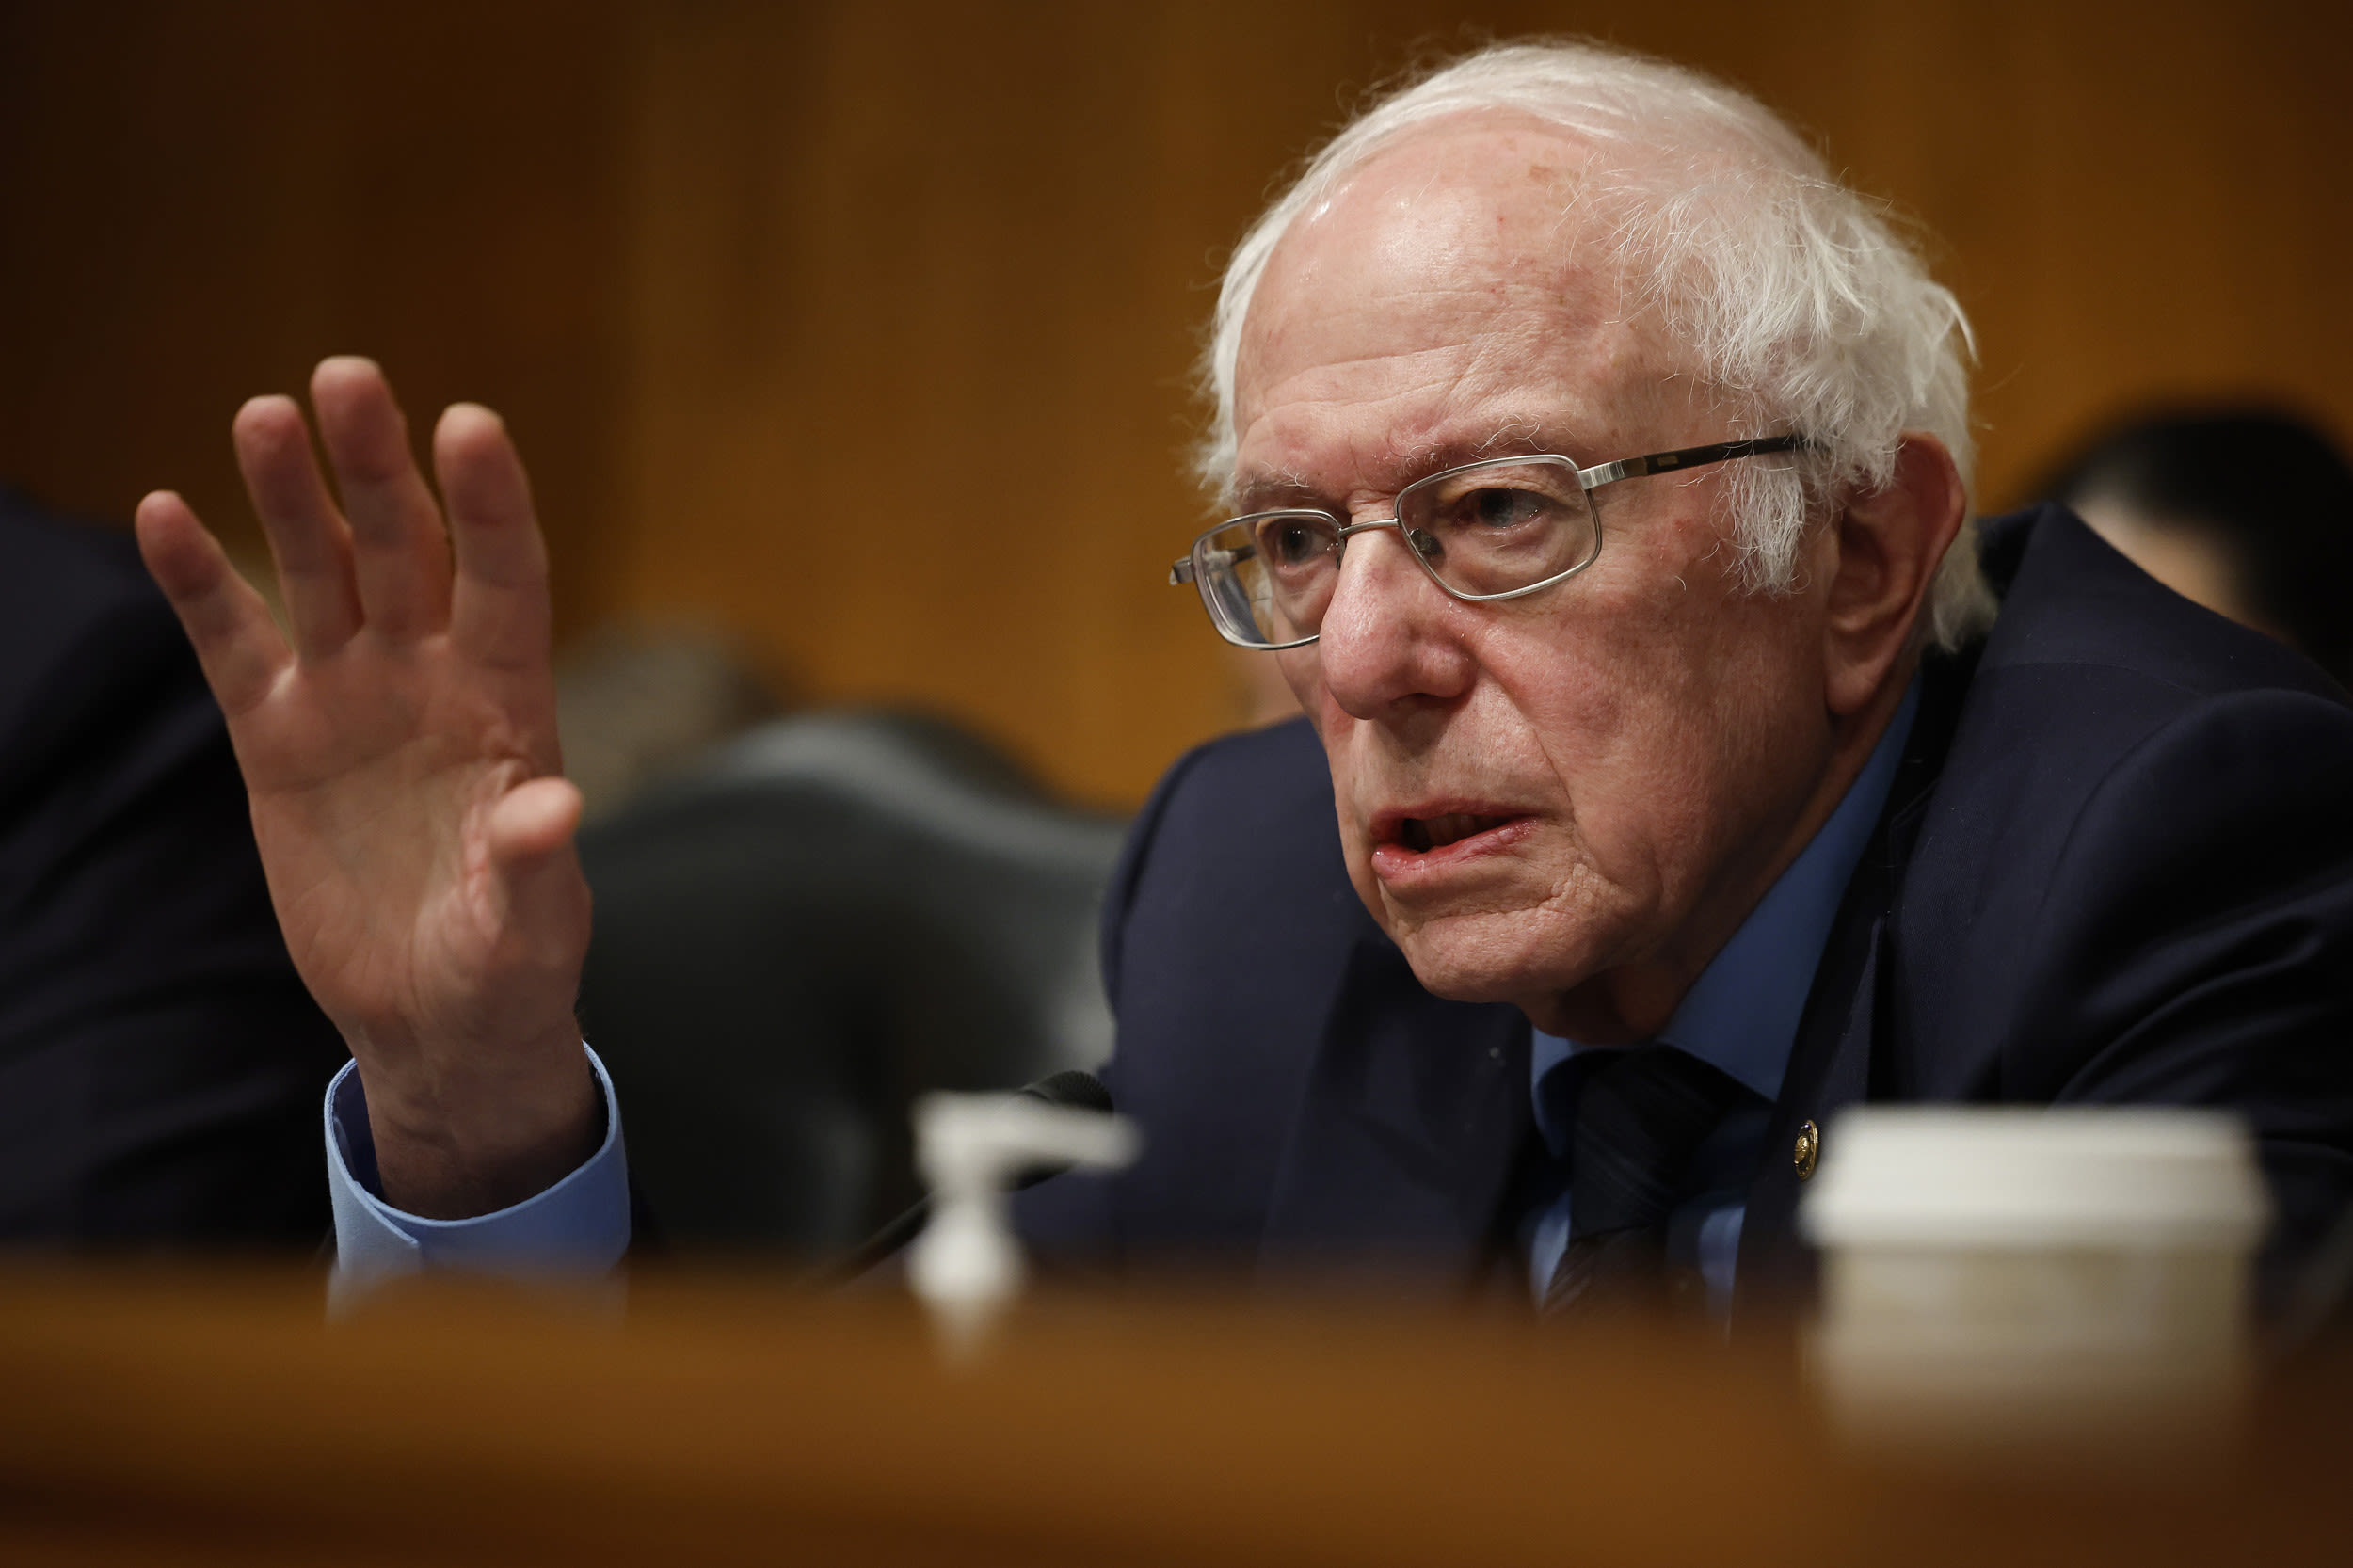 Bernie Sanders issues scathing rebuke of Israel